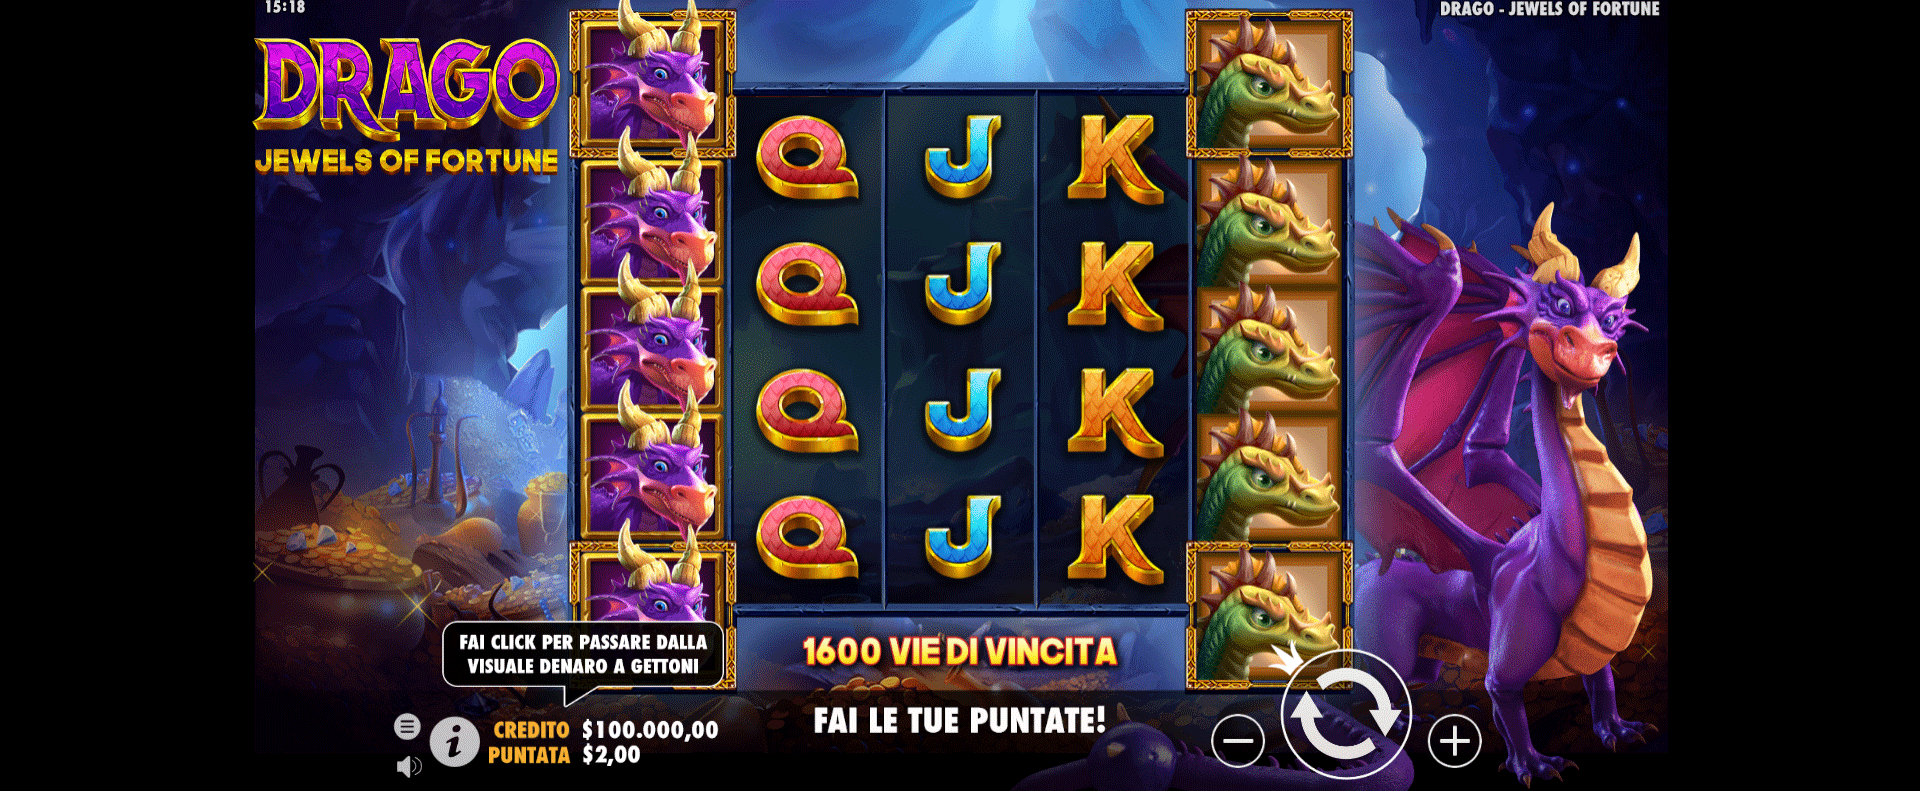 griglia di gioco della slot online drago jewels of fortune